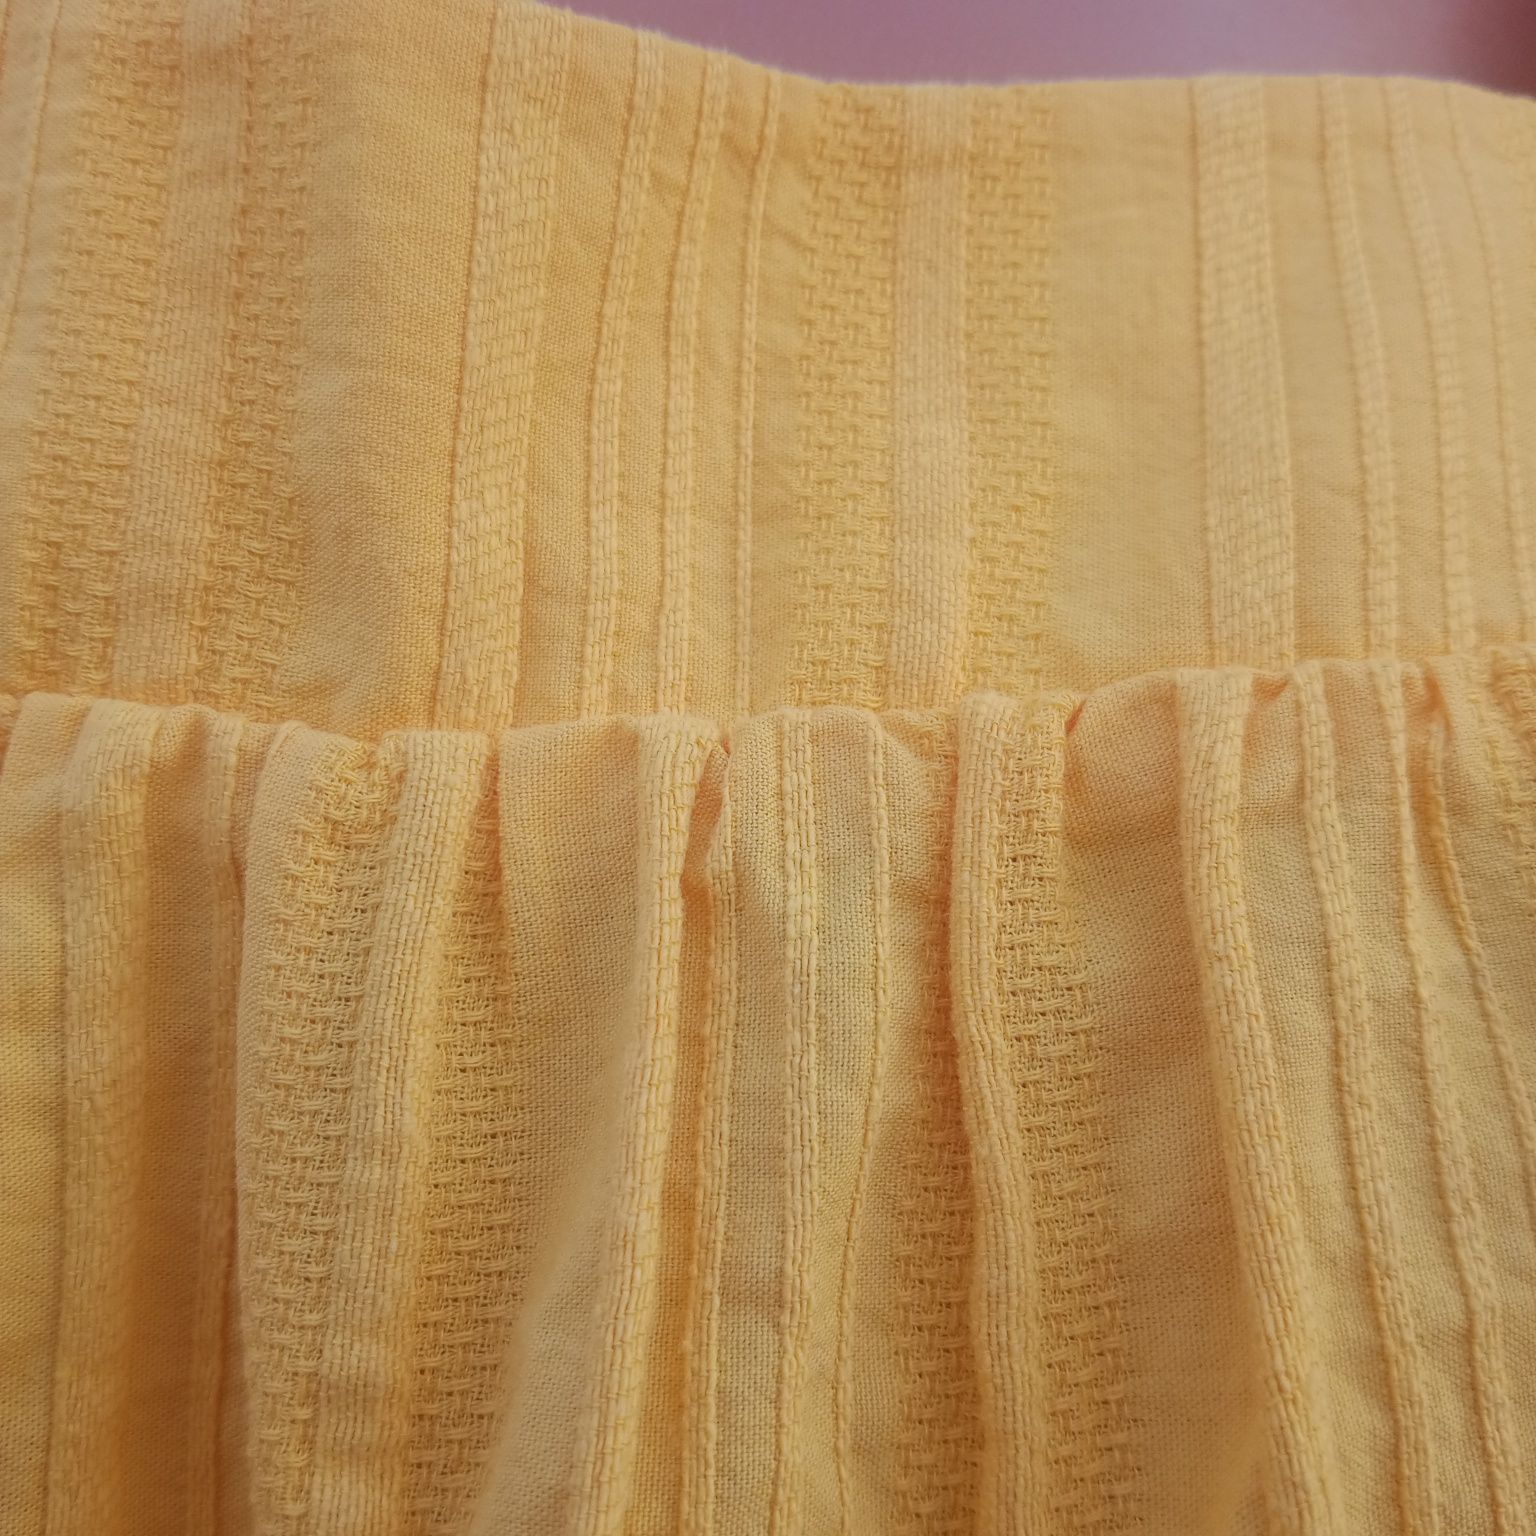 Żółta bluzka damska na lato, rozmiar 14, nowa